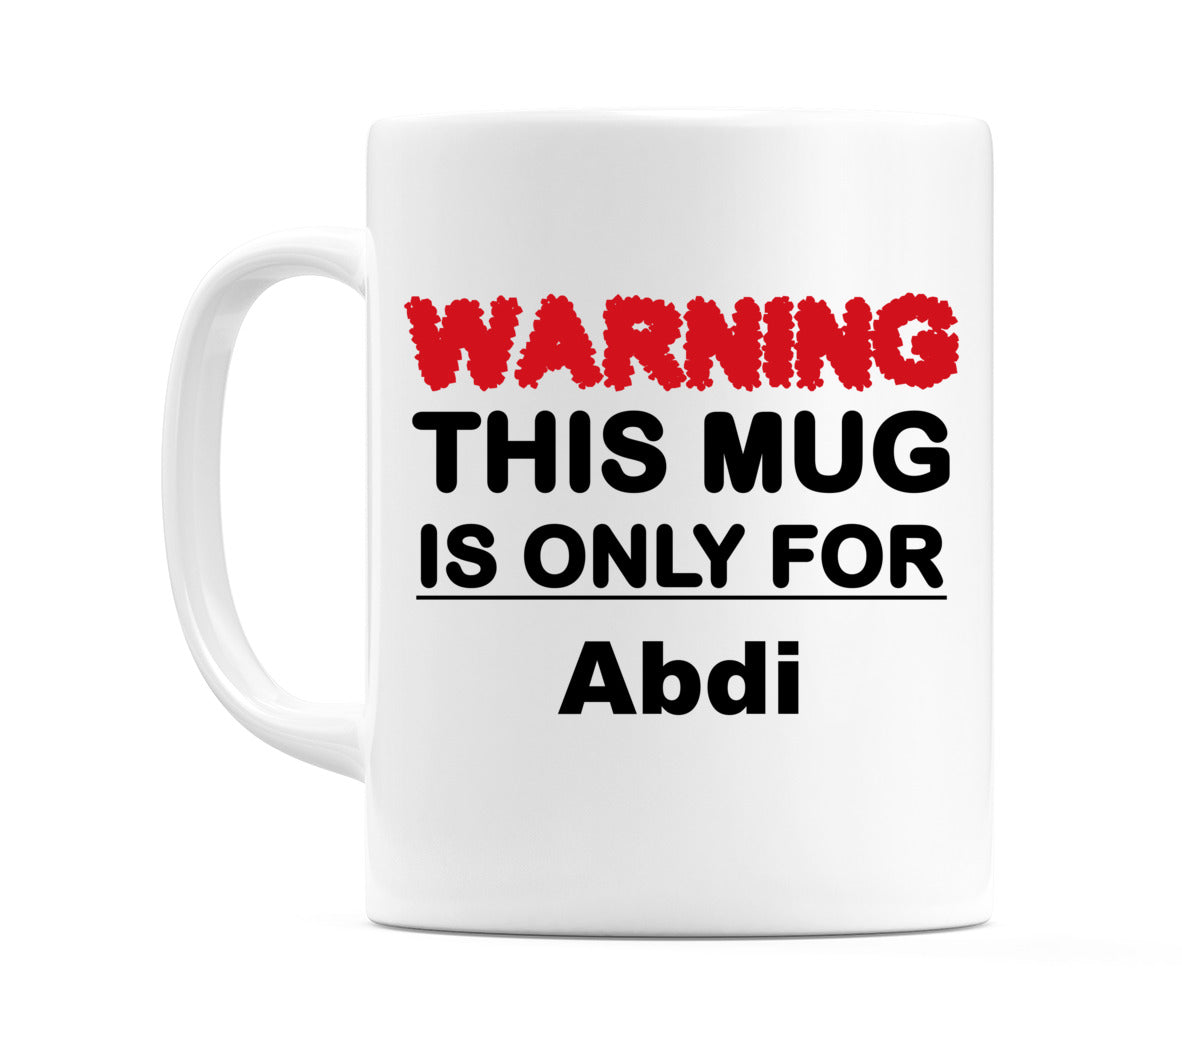 Warning This Mug is ONLY for Abdi Mug